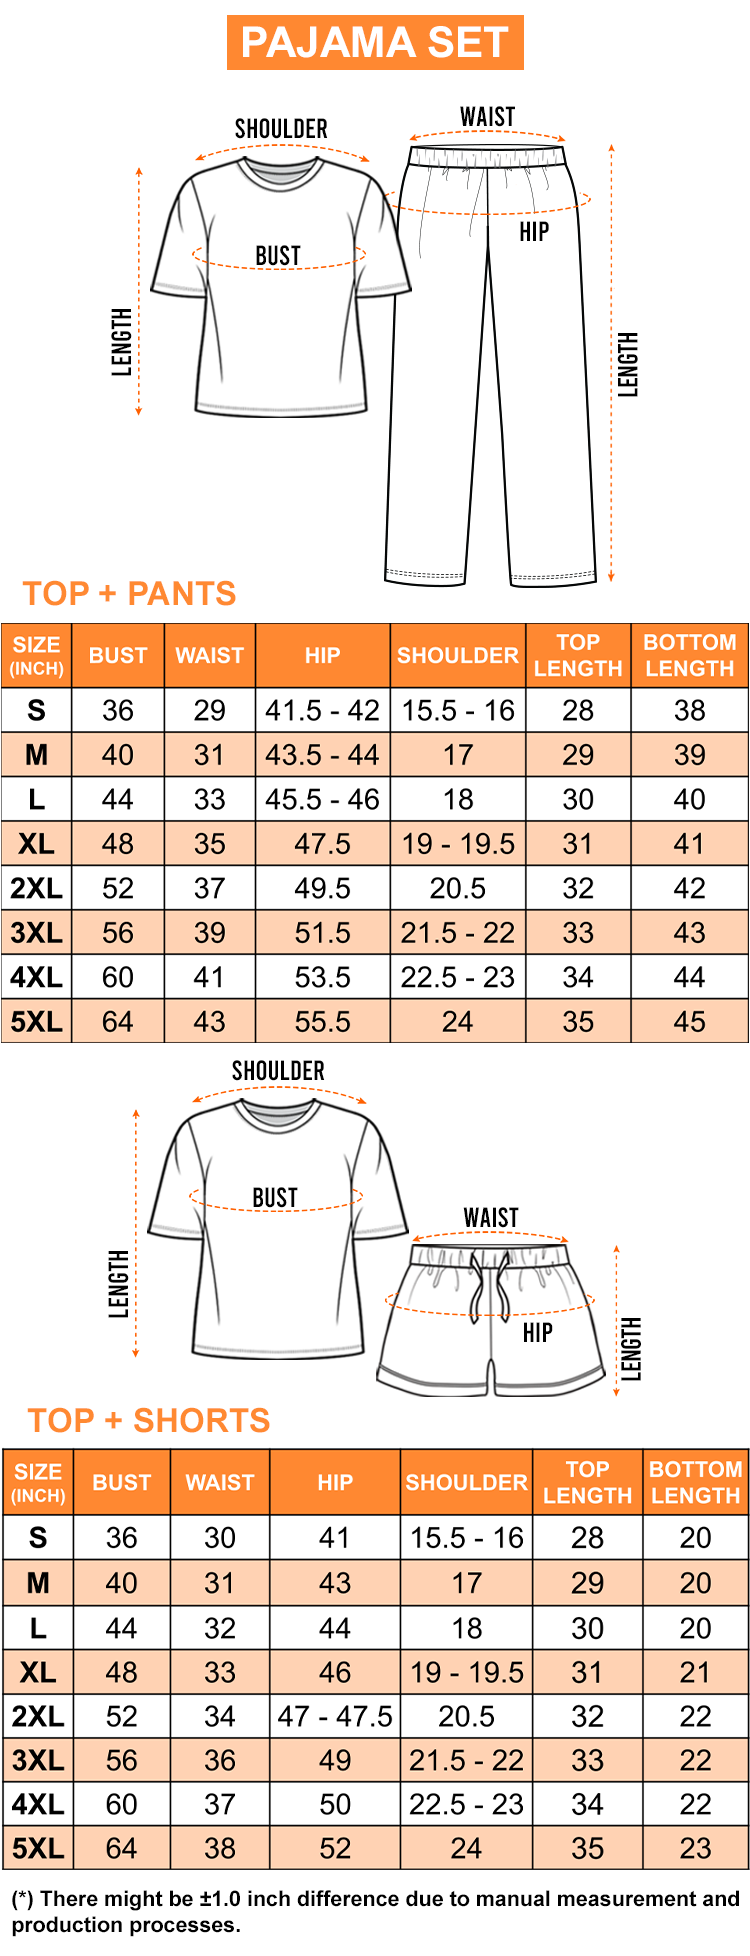 Pajama Shirt - Personalized Custom Pajama Set – PAWSIONATE